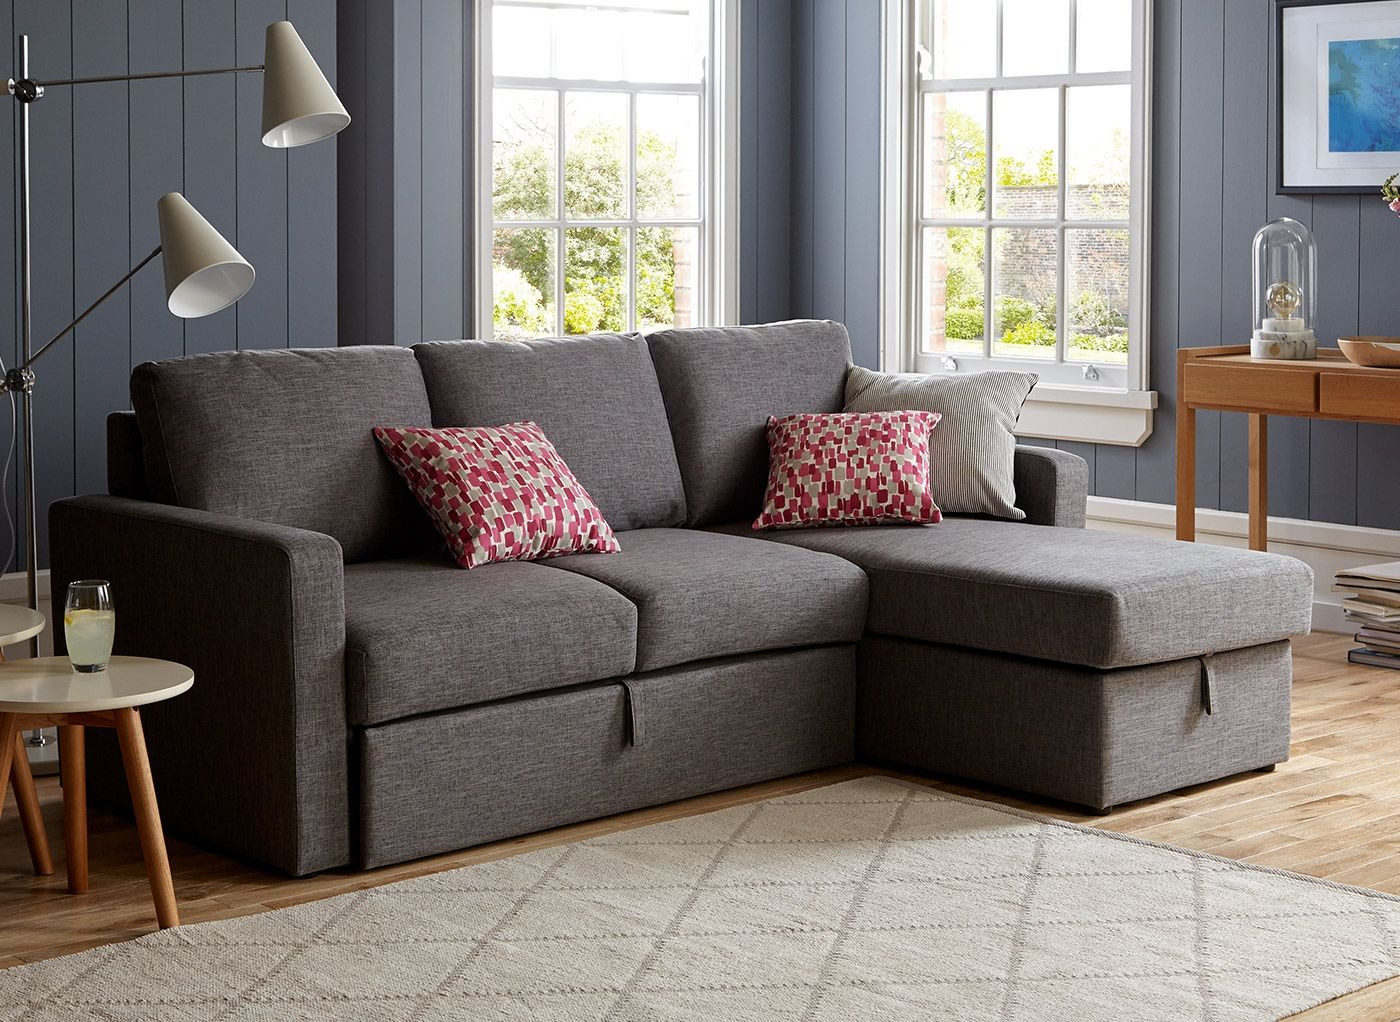 Sofa pictures. Модные расцветки диванов. Угловые диваны для гостиной со спальным местом в современном стиле. Красивые расцветки диванов. Идеальный диван.